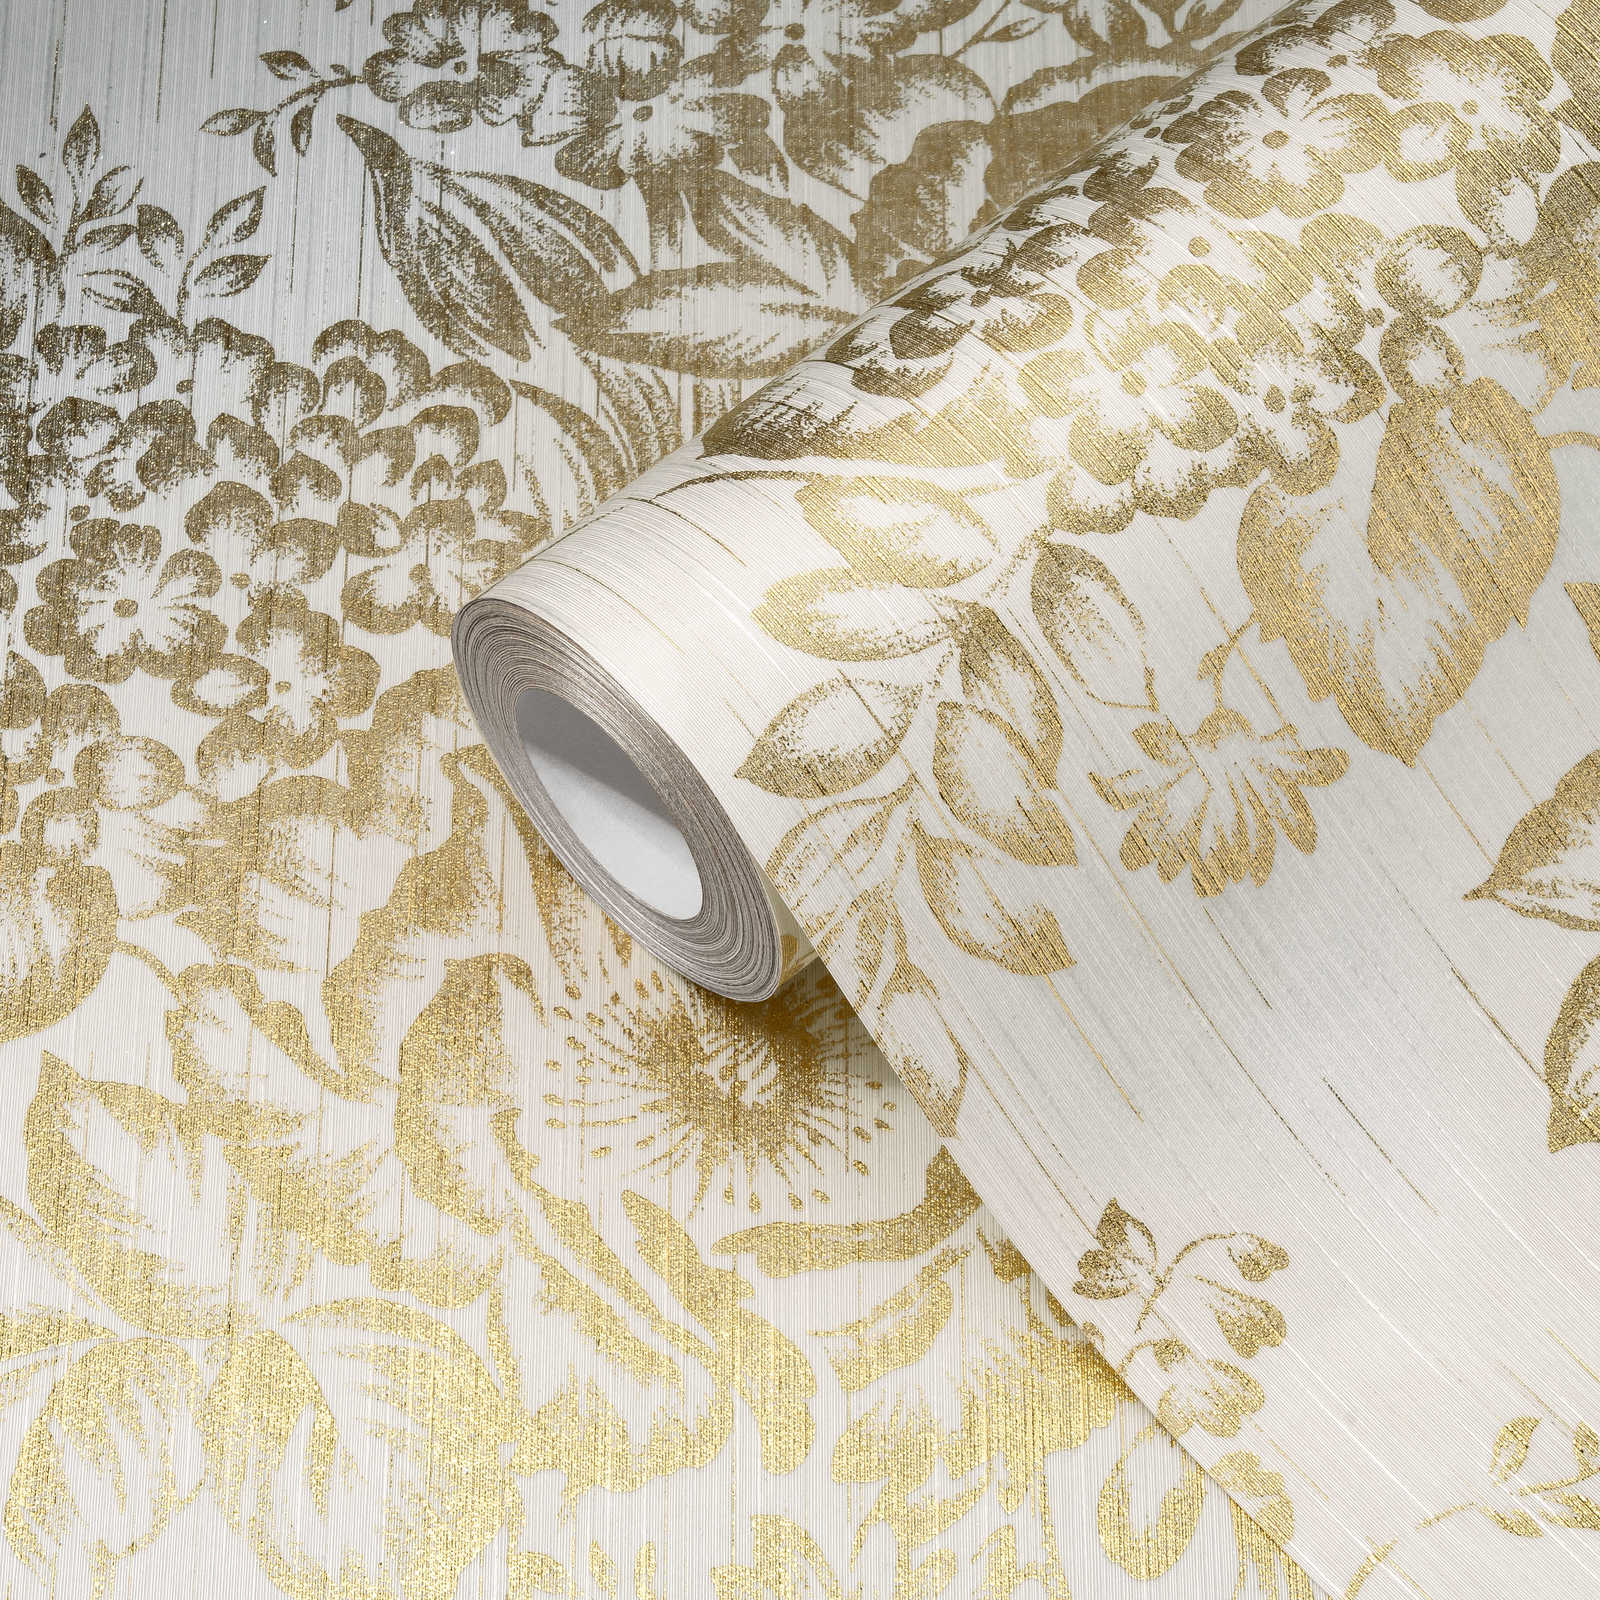             Papier peint structuré avec motif floral doré - or, blanc
        